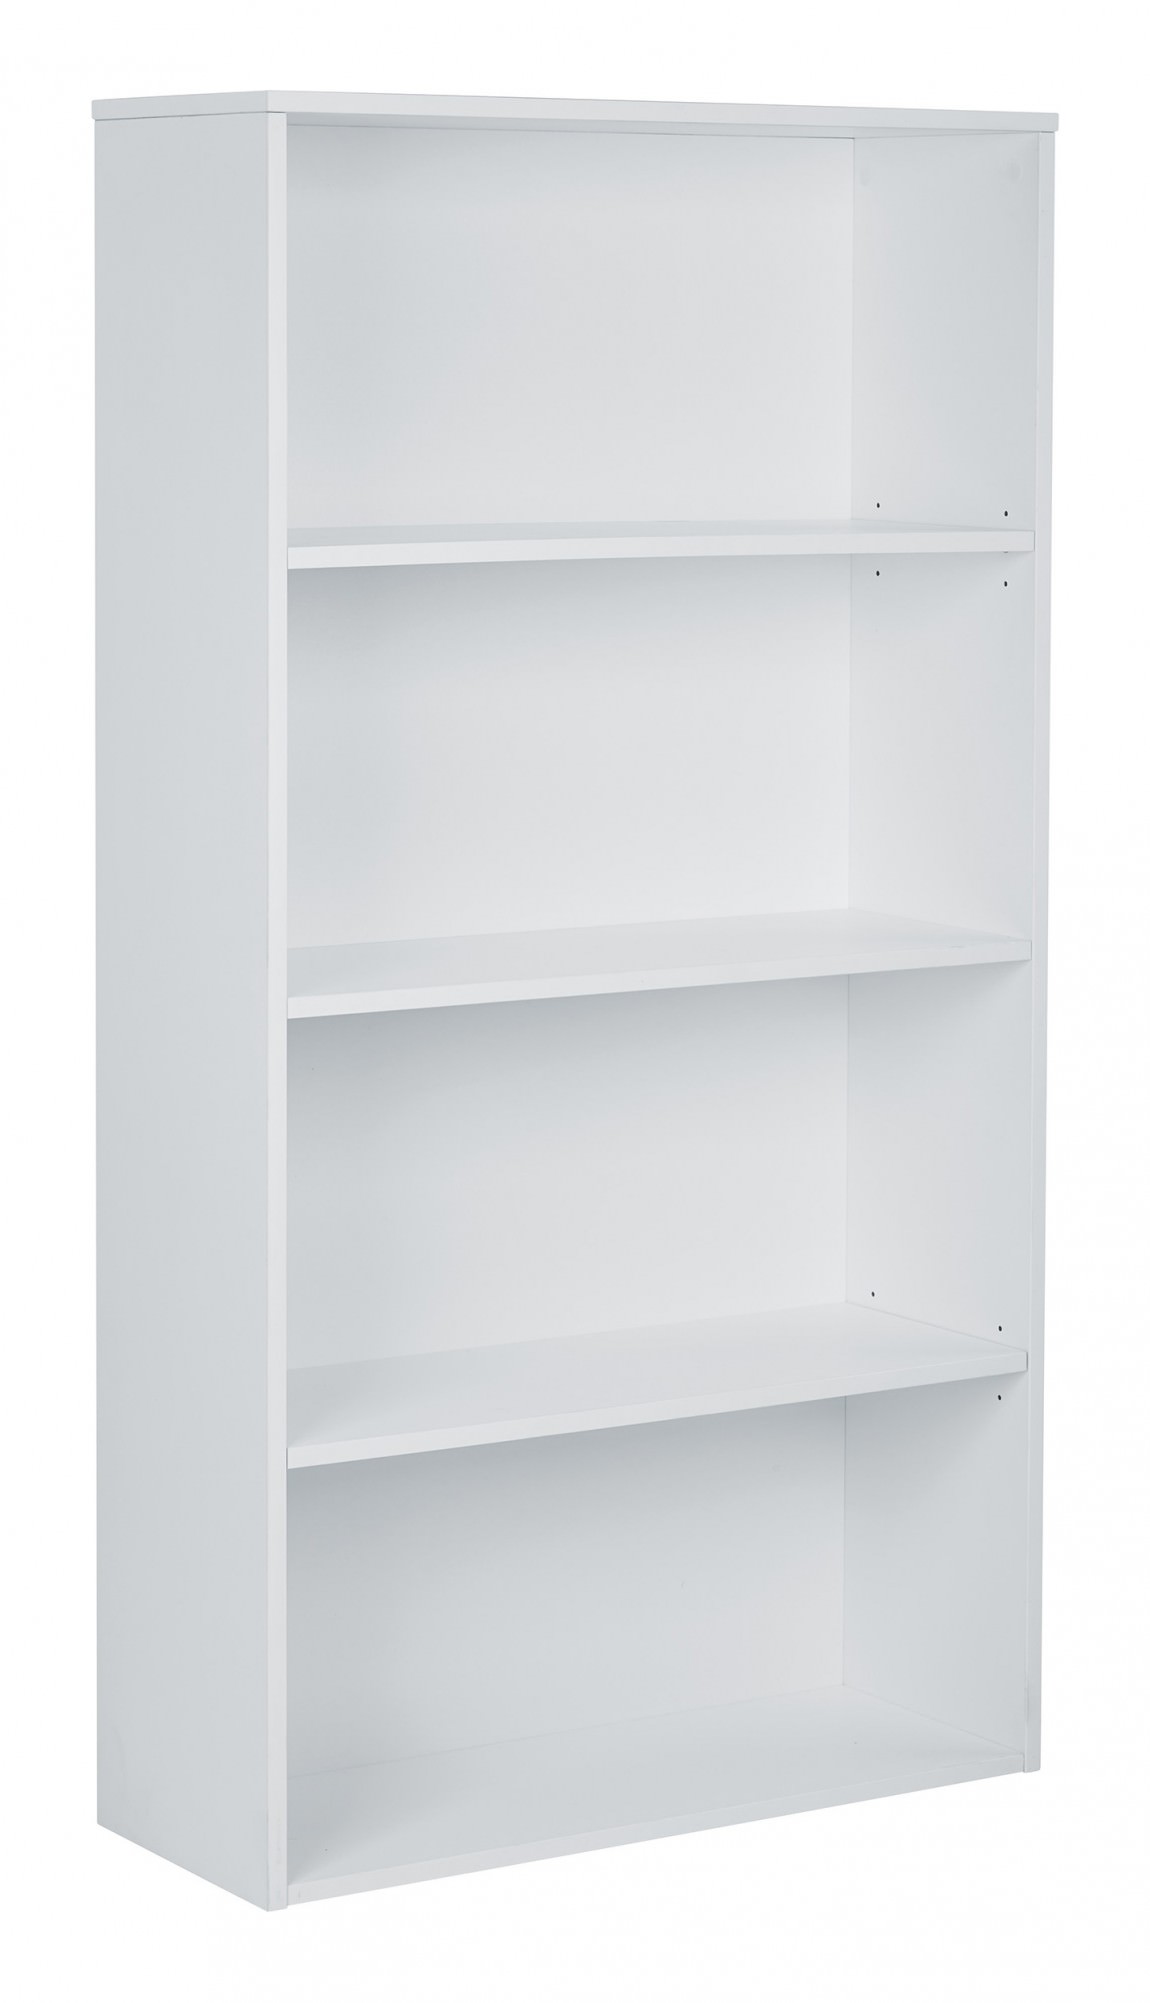 Prado Four-Shelf Bookcase